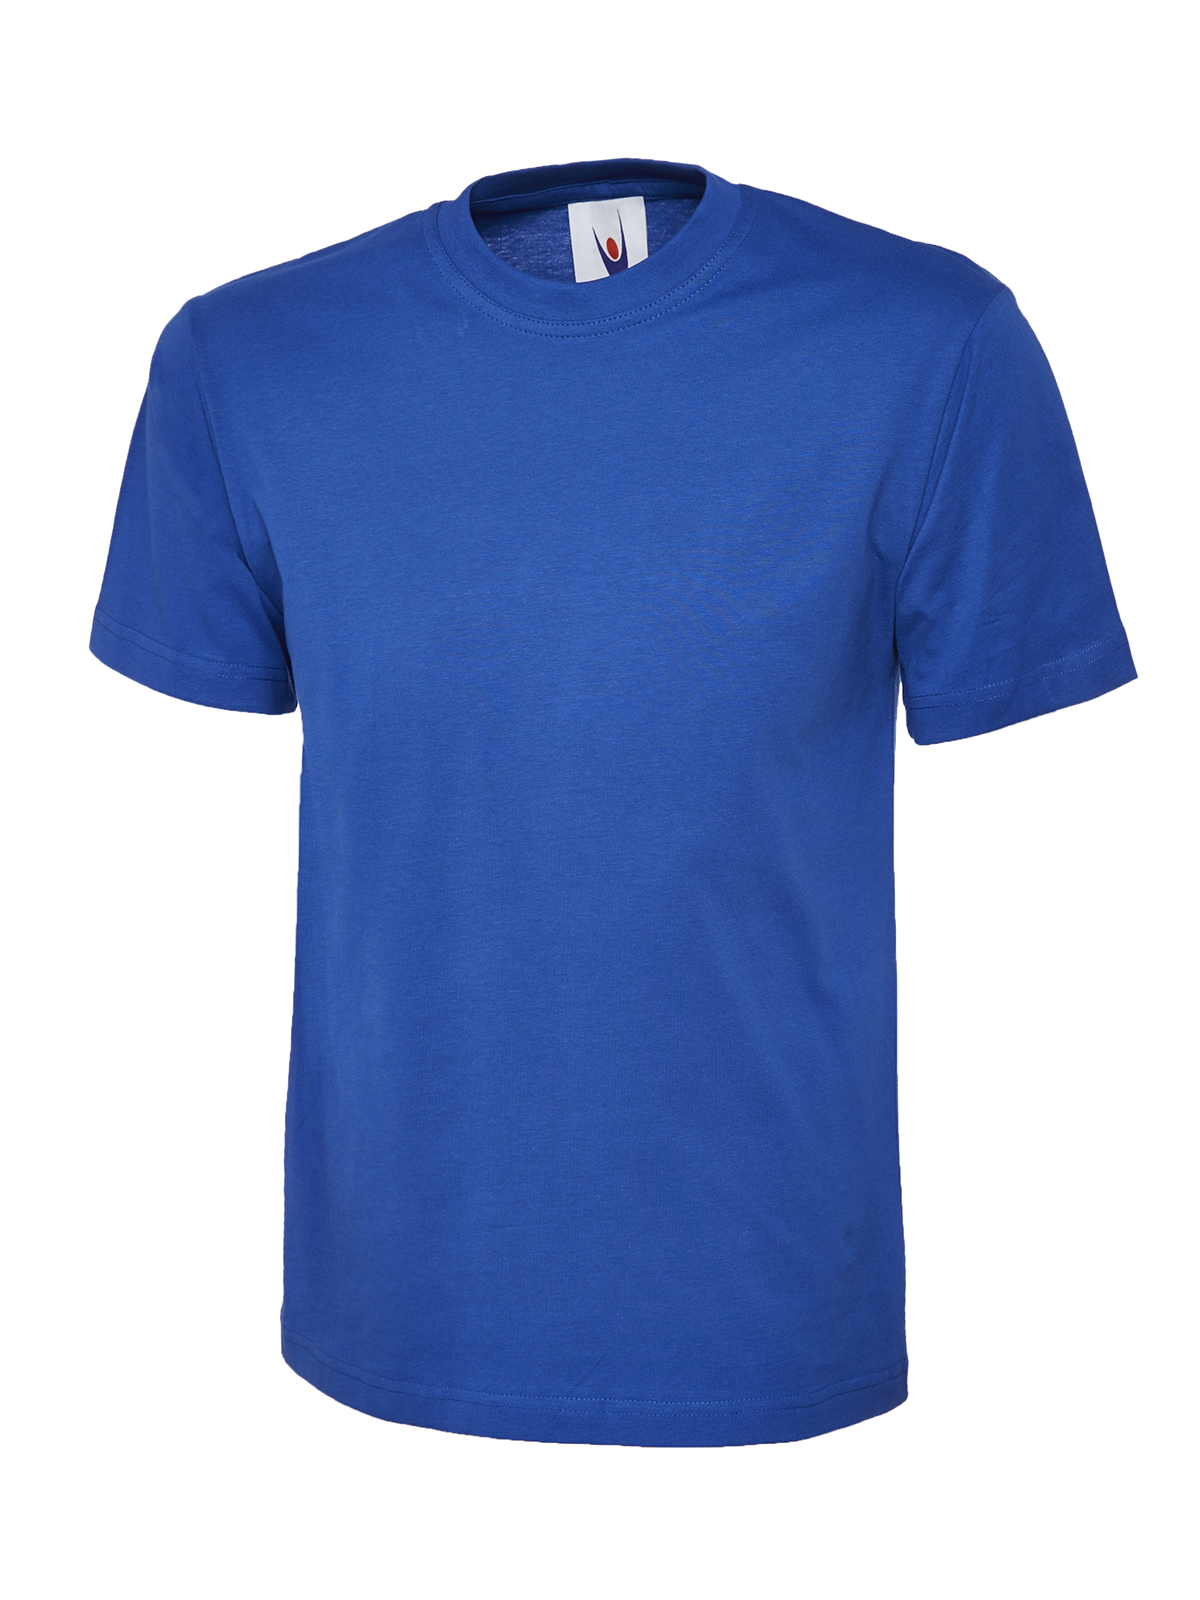 Uneek Herren T-Shirt Premium kornblau